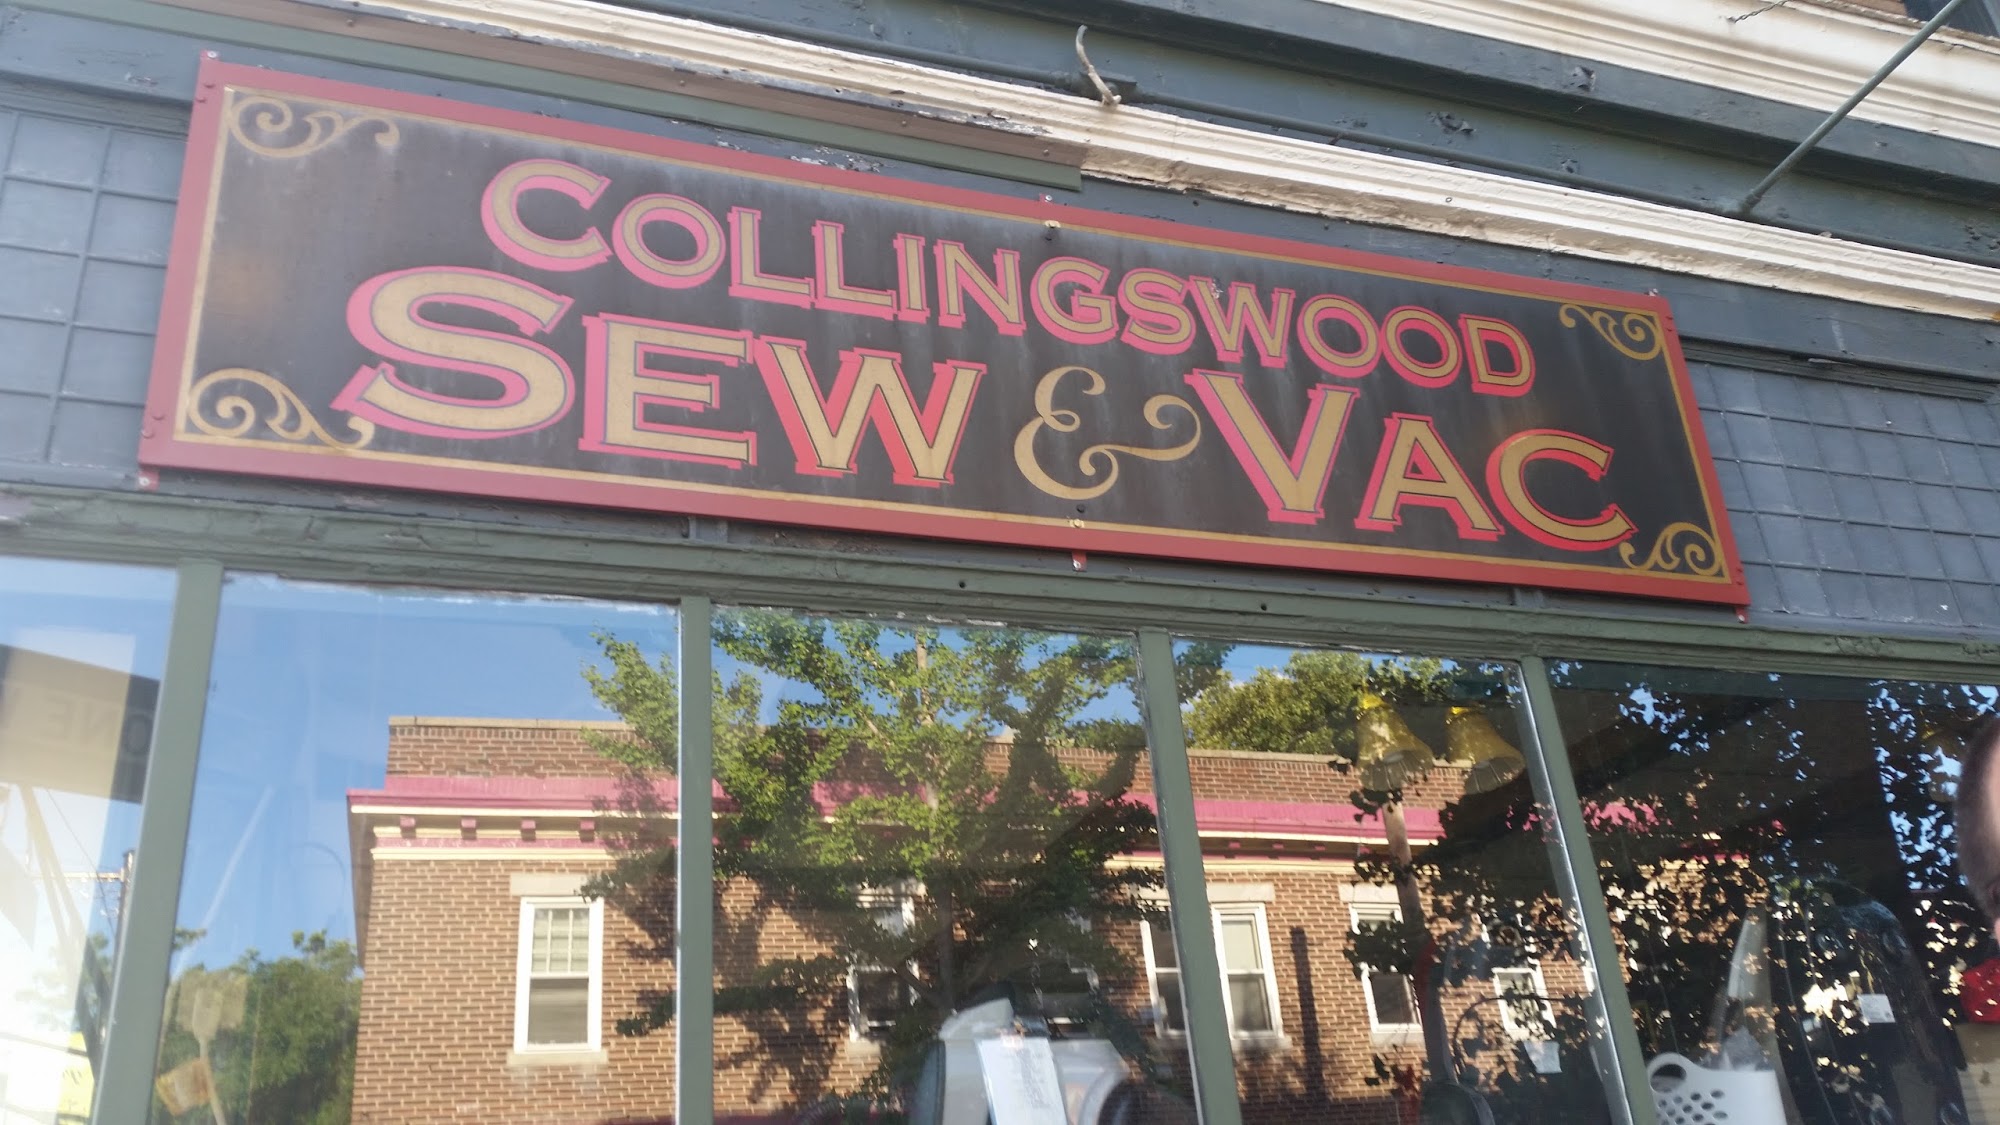 Collingswood Sew & Vacuum